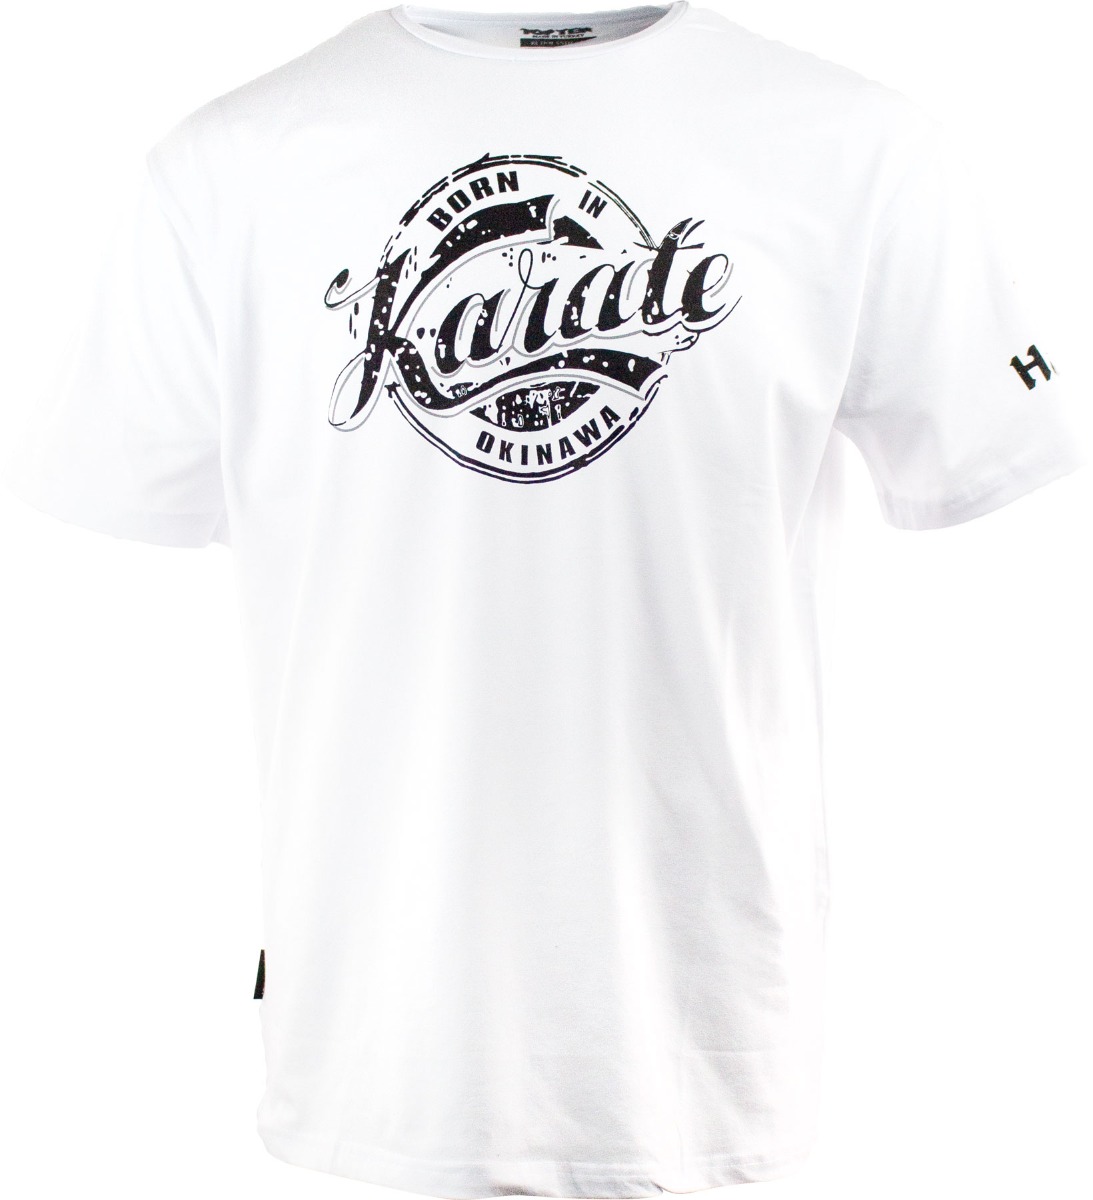 Hayashi T-Shirt “Karate” Wit